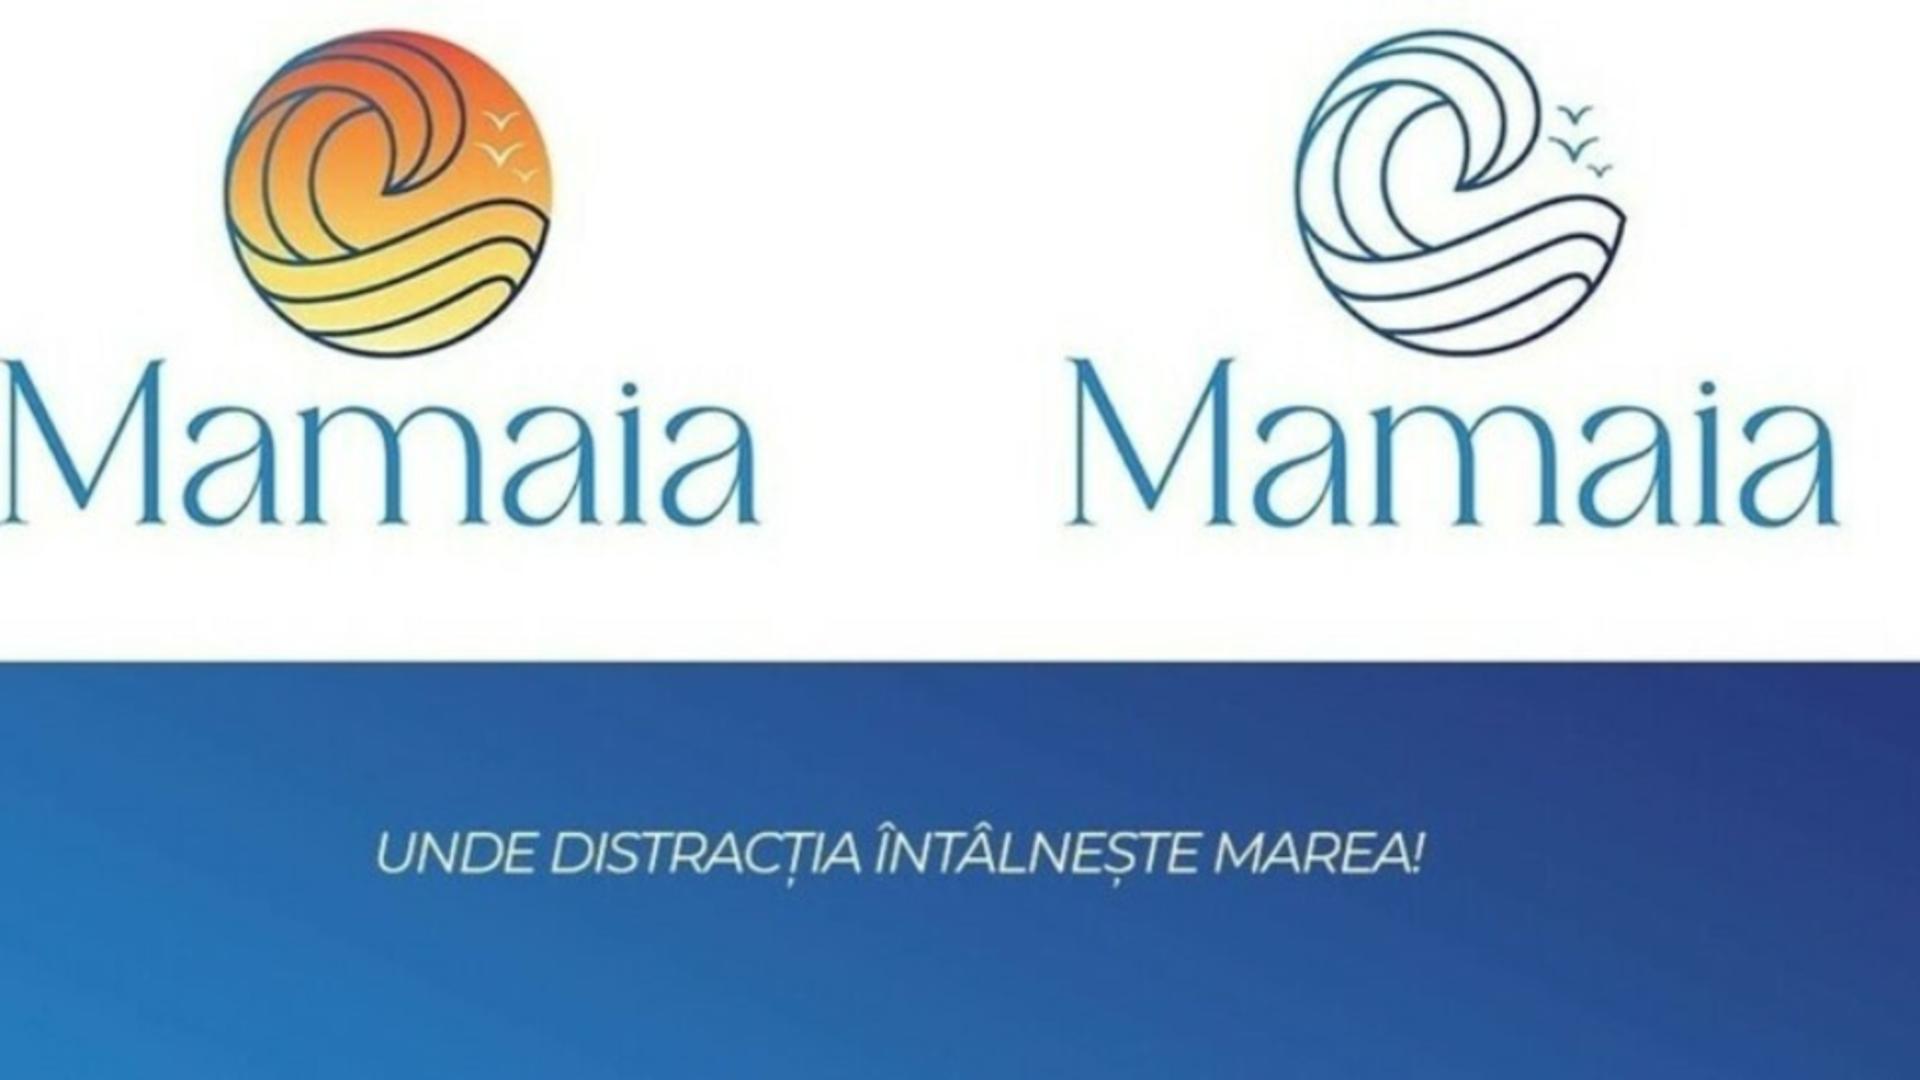 Agenţia care a propus pentru identitatea de brand a staţiunii Mamaia un logo cumpărat de pe internet nu va fi plătită